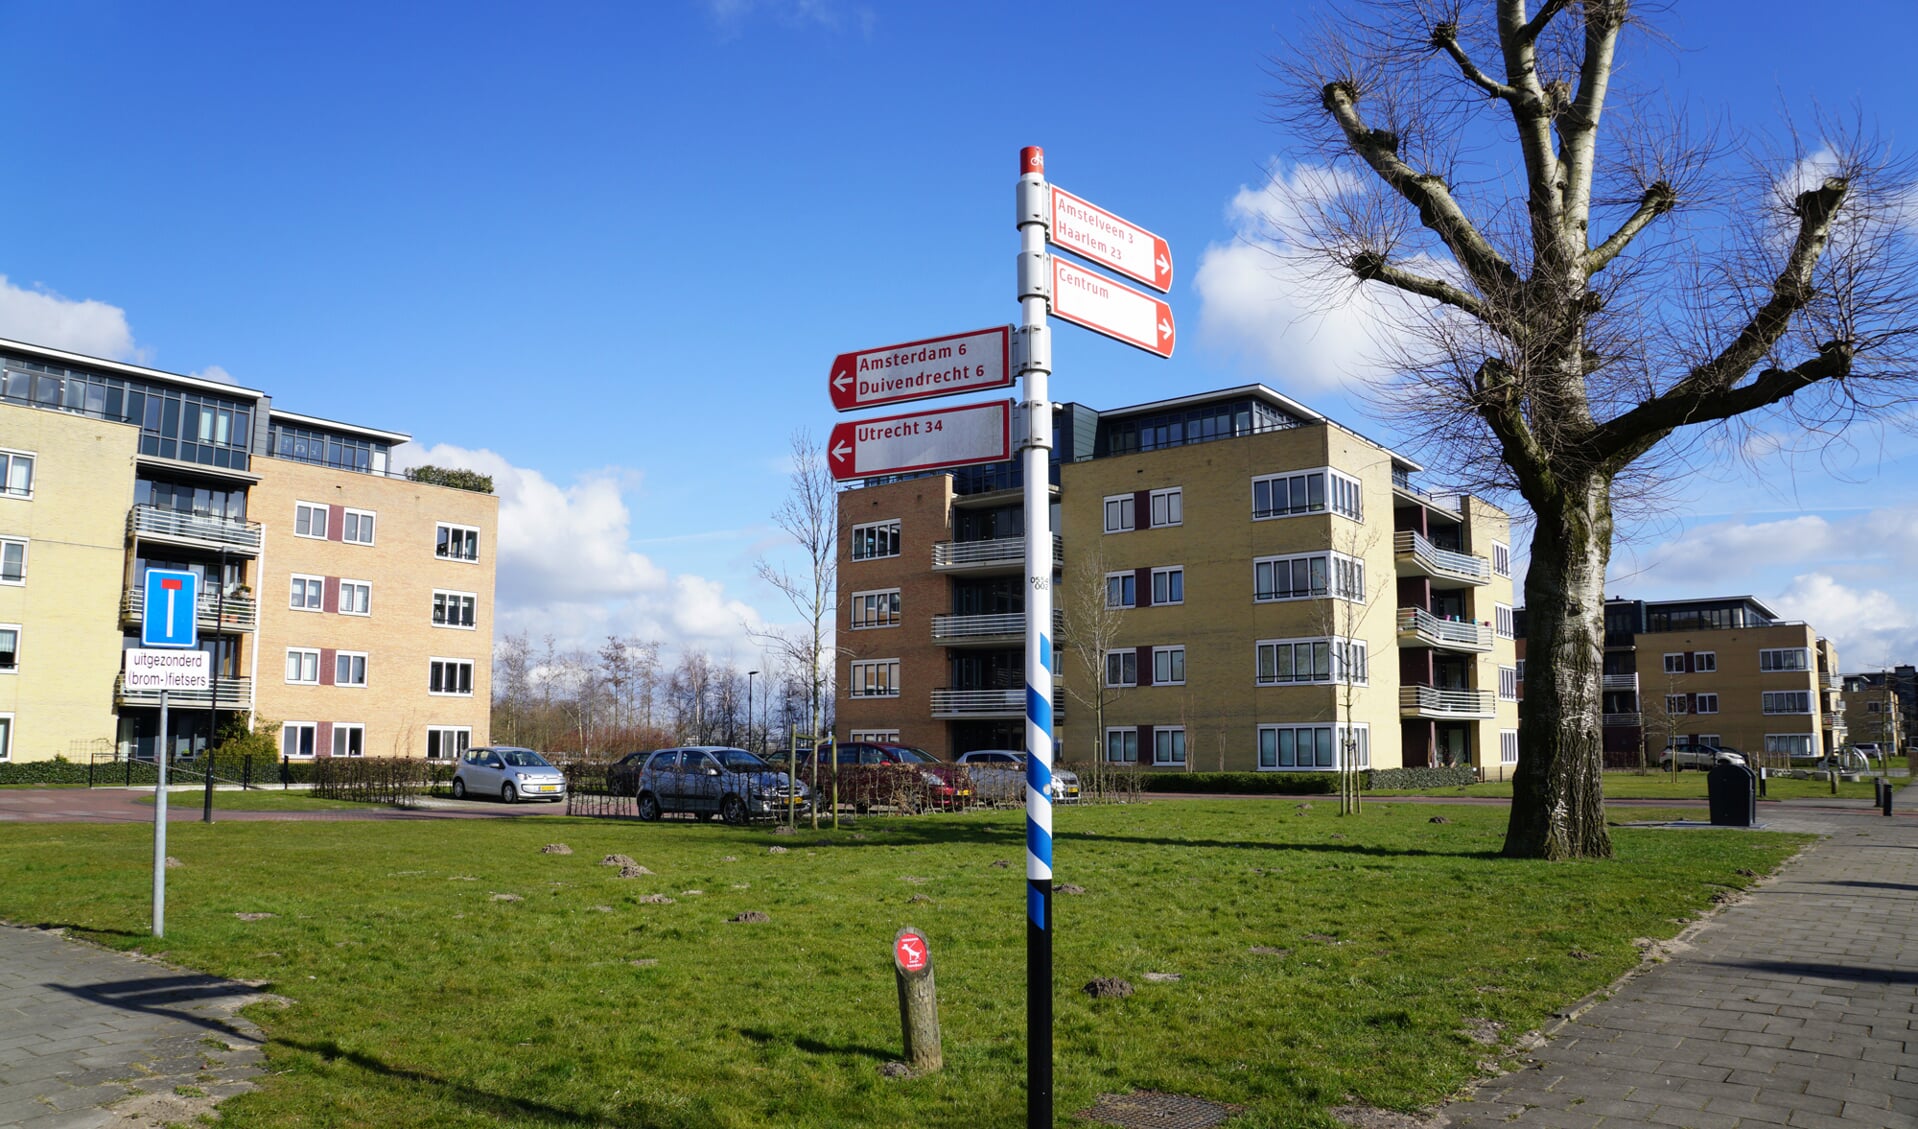 Appartementen aan de wethouder Koolhaasweg in Ouderkerk. 